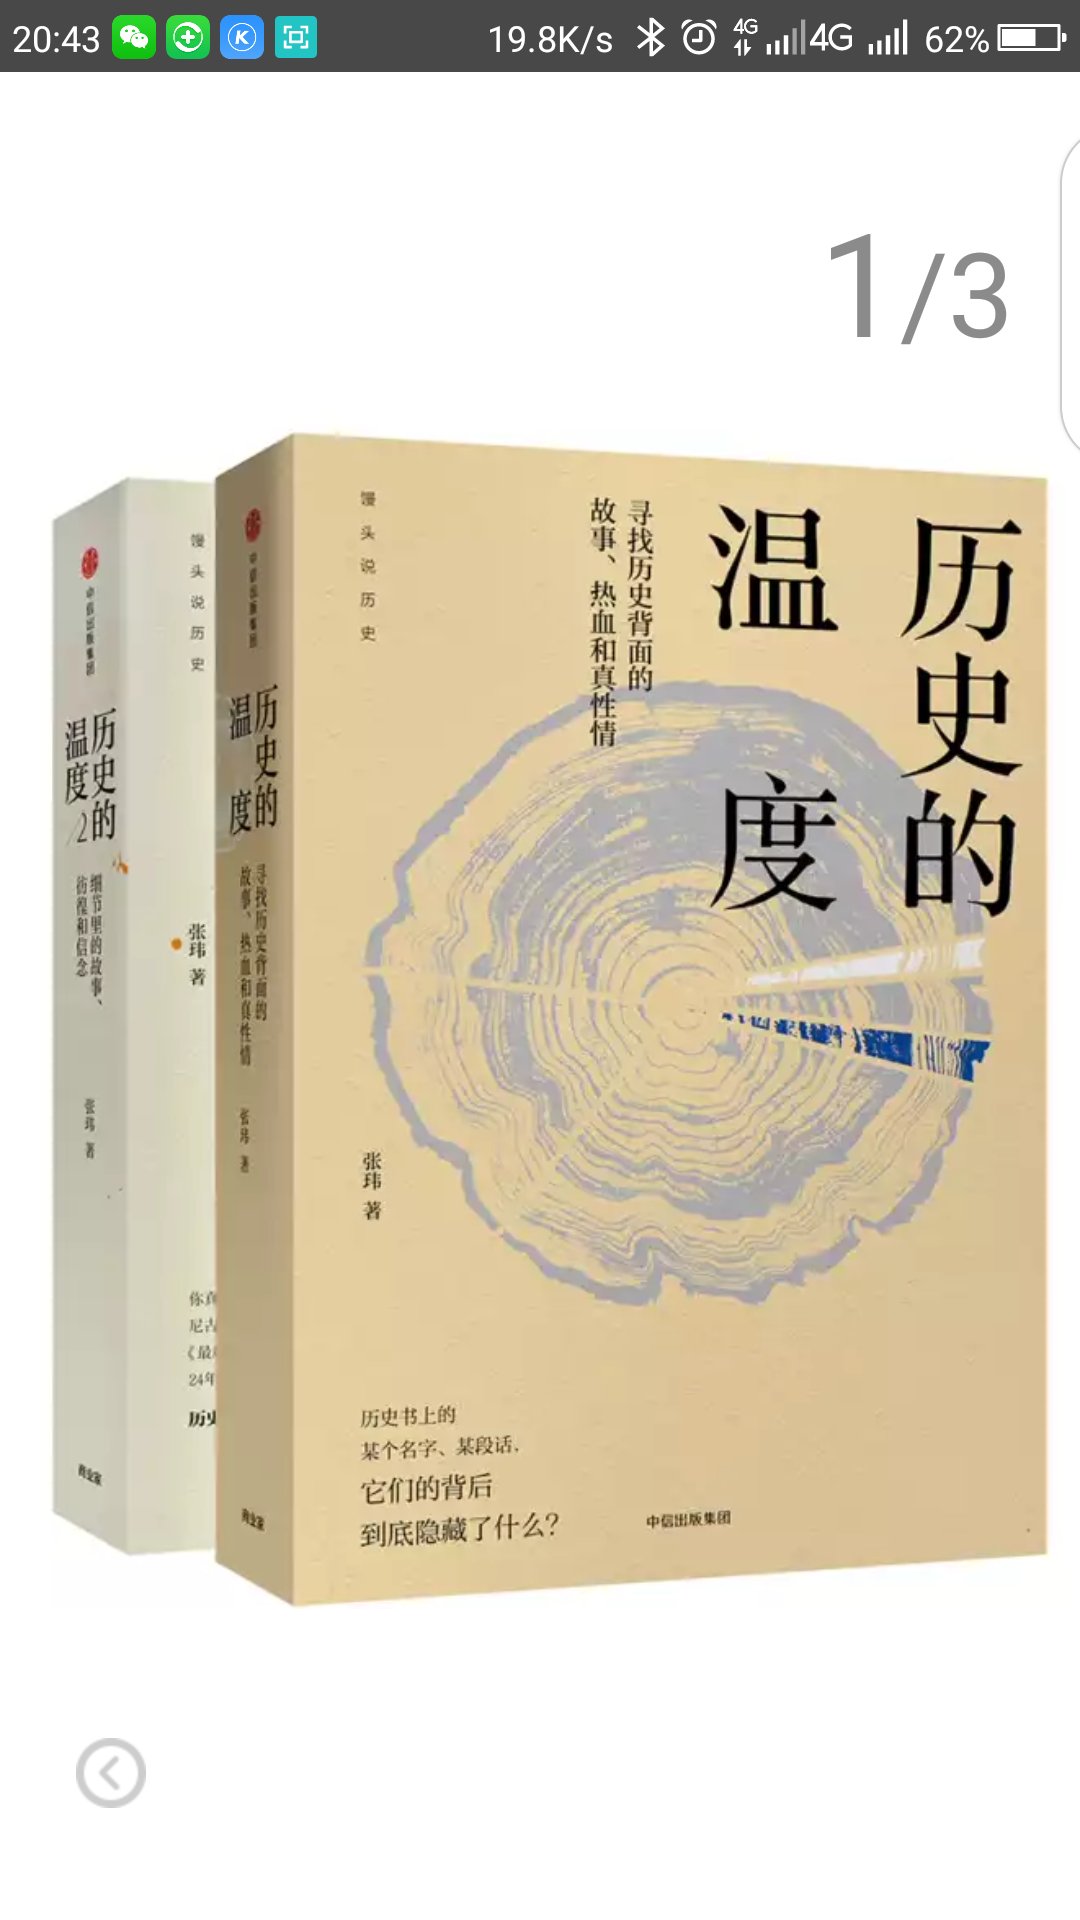 袁珂先生专为读者写就的中国神话简明读本，让我们重温神话中那些“儿童时代的天真”，感受中国神话“长久的魅力”